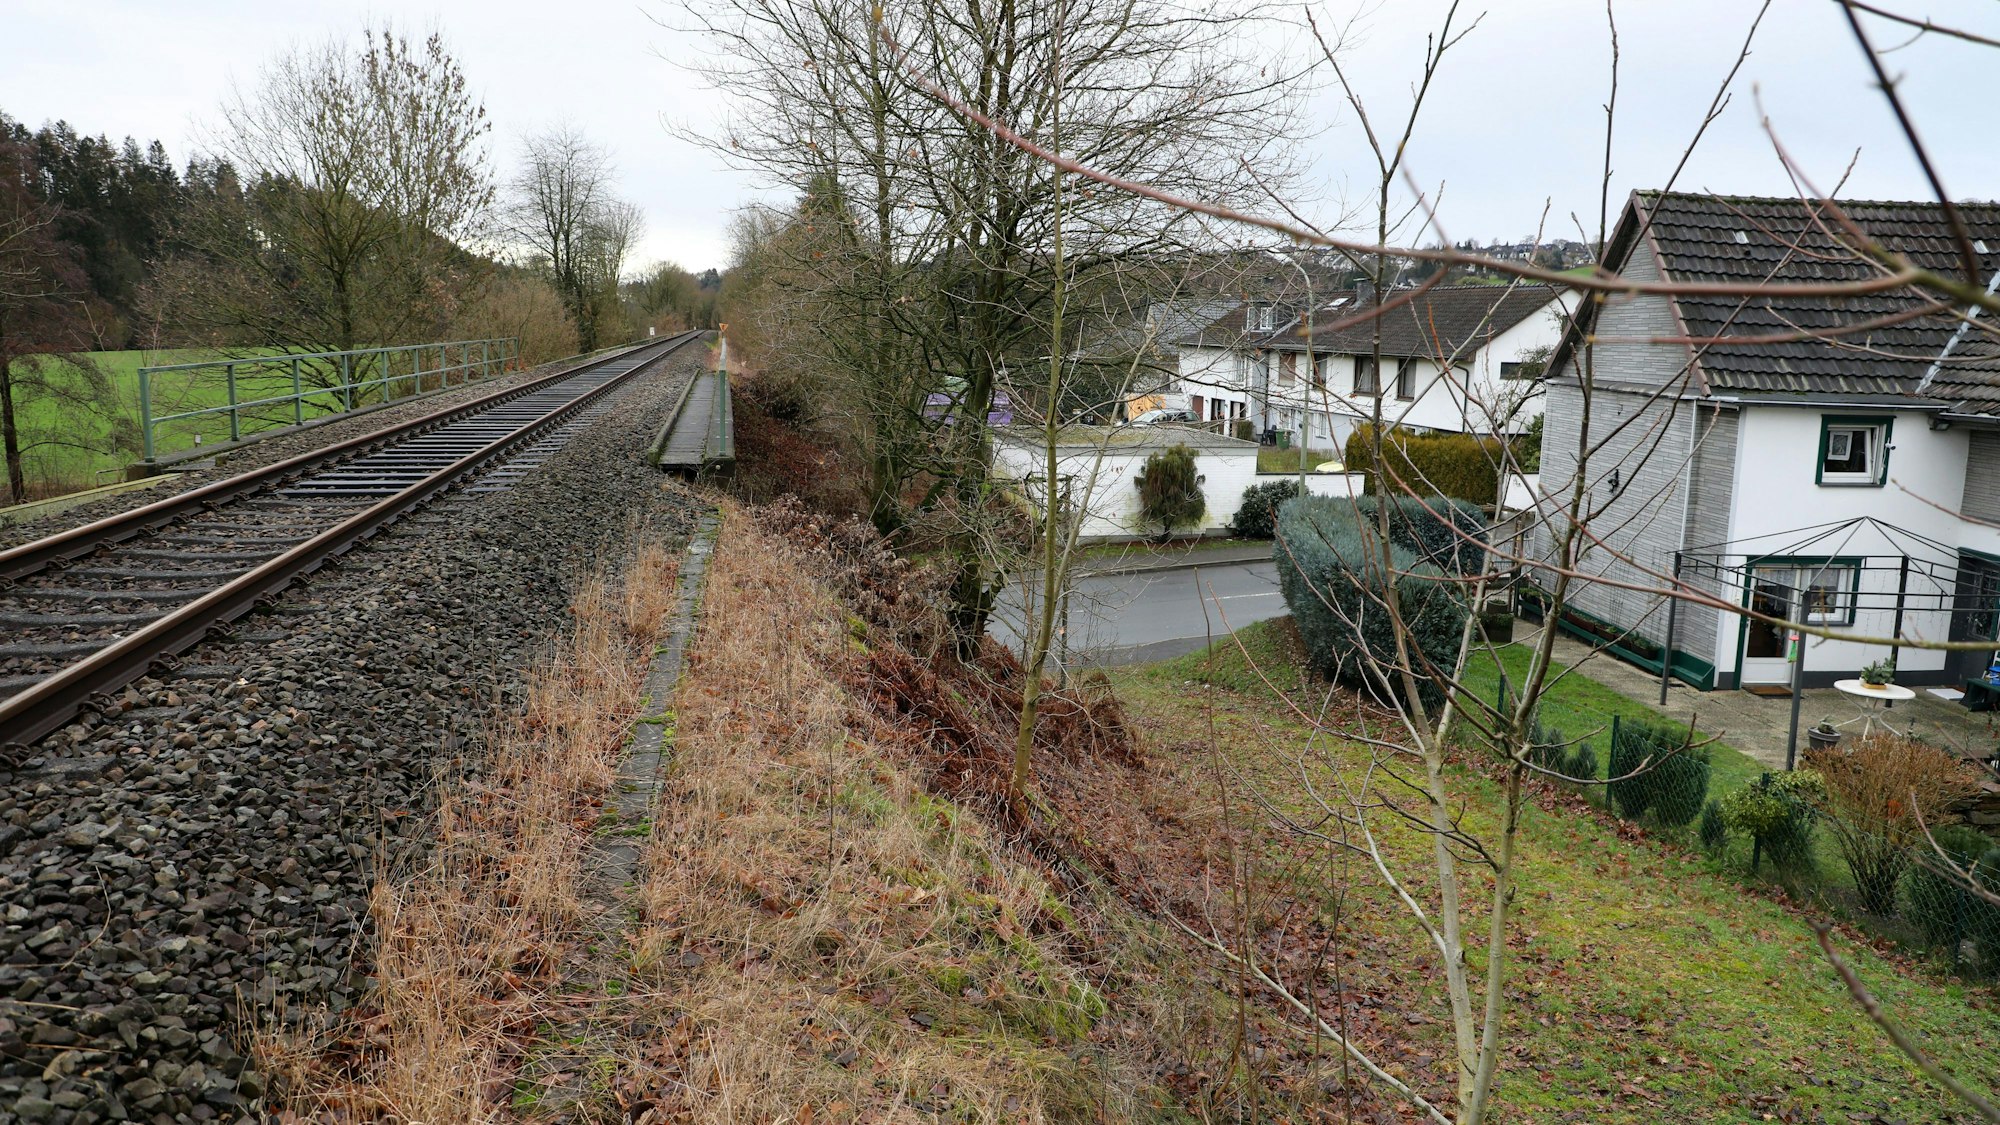 Blick auf Vilkerath: Links eine Schienentrasse, rechts ein Wohngebiet.